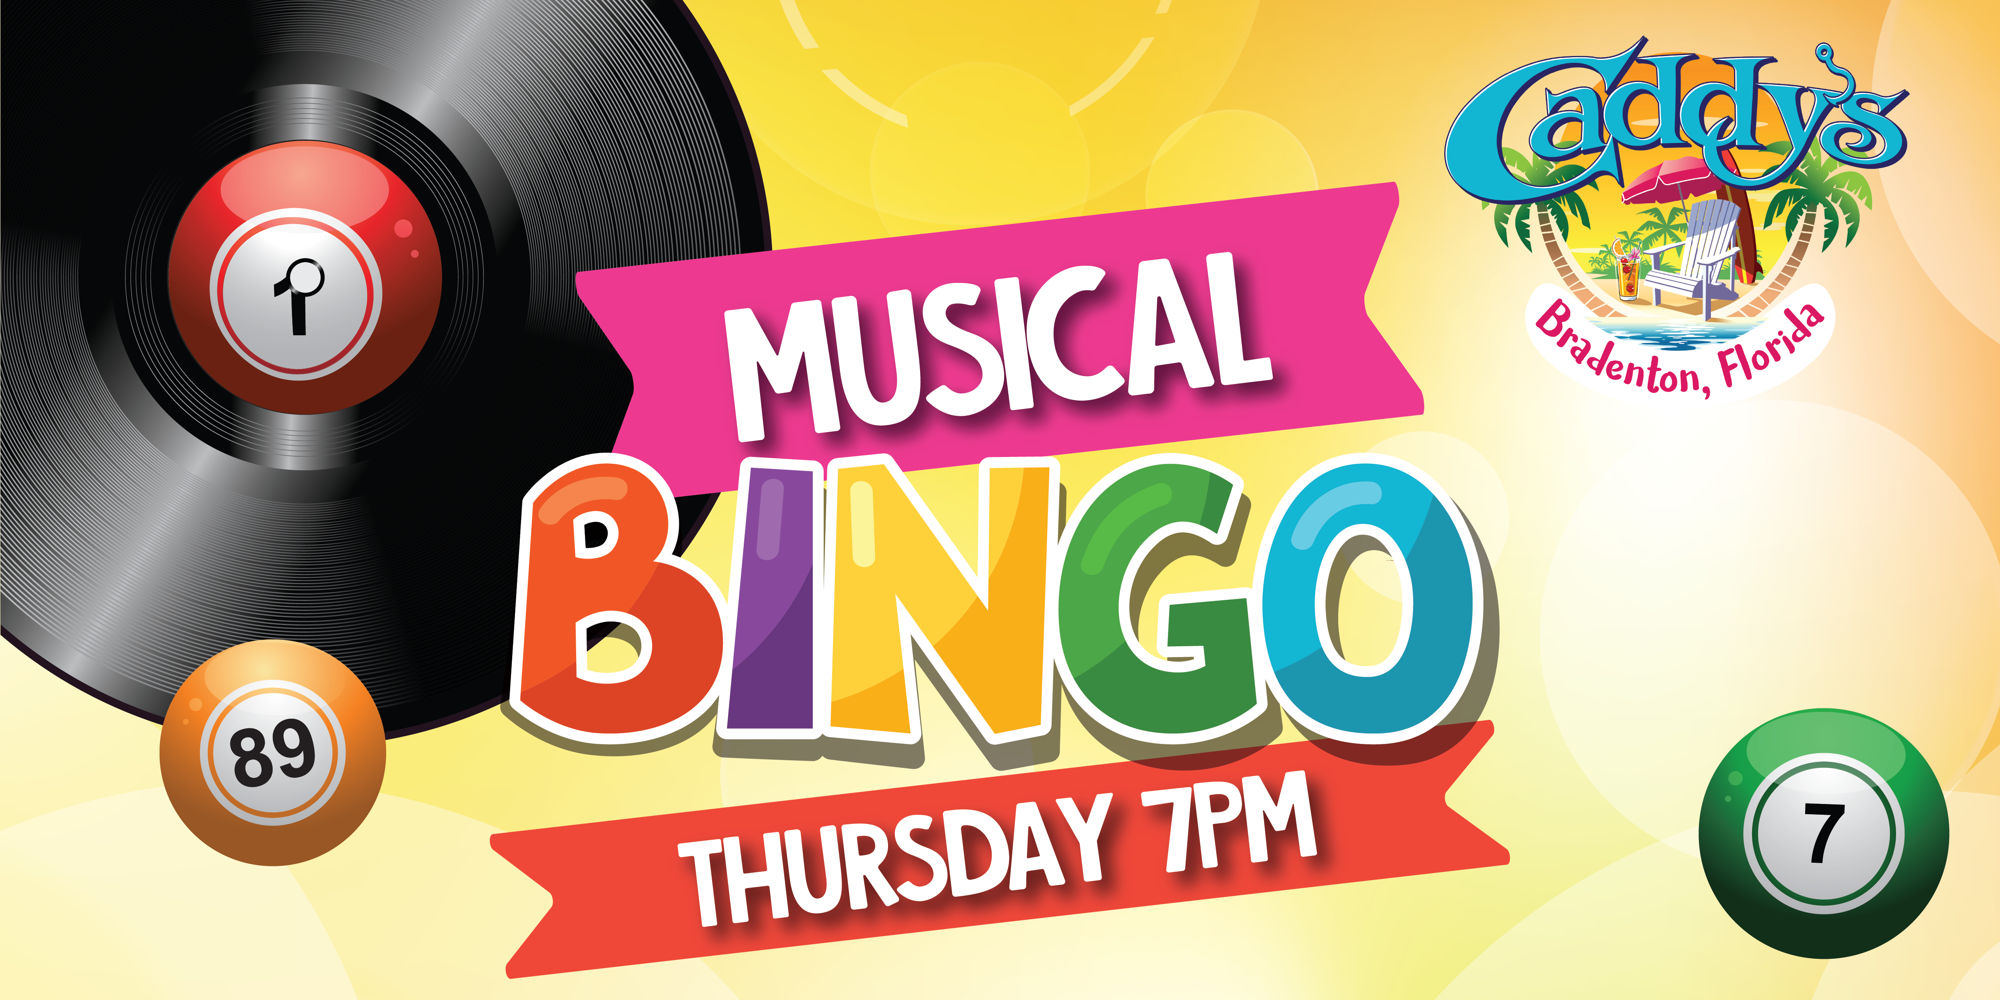 Thursday Musical Bingo! promotional image